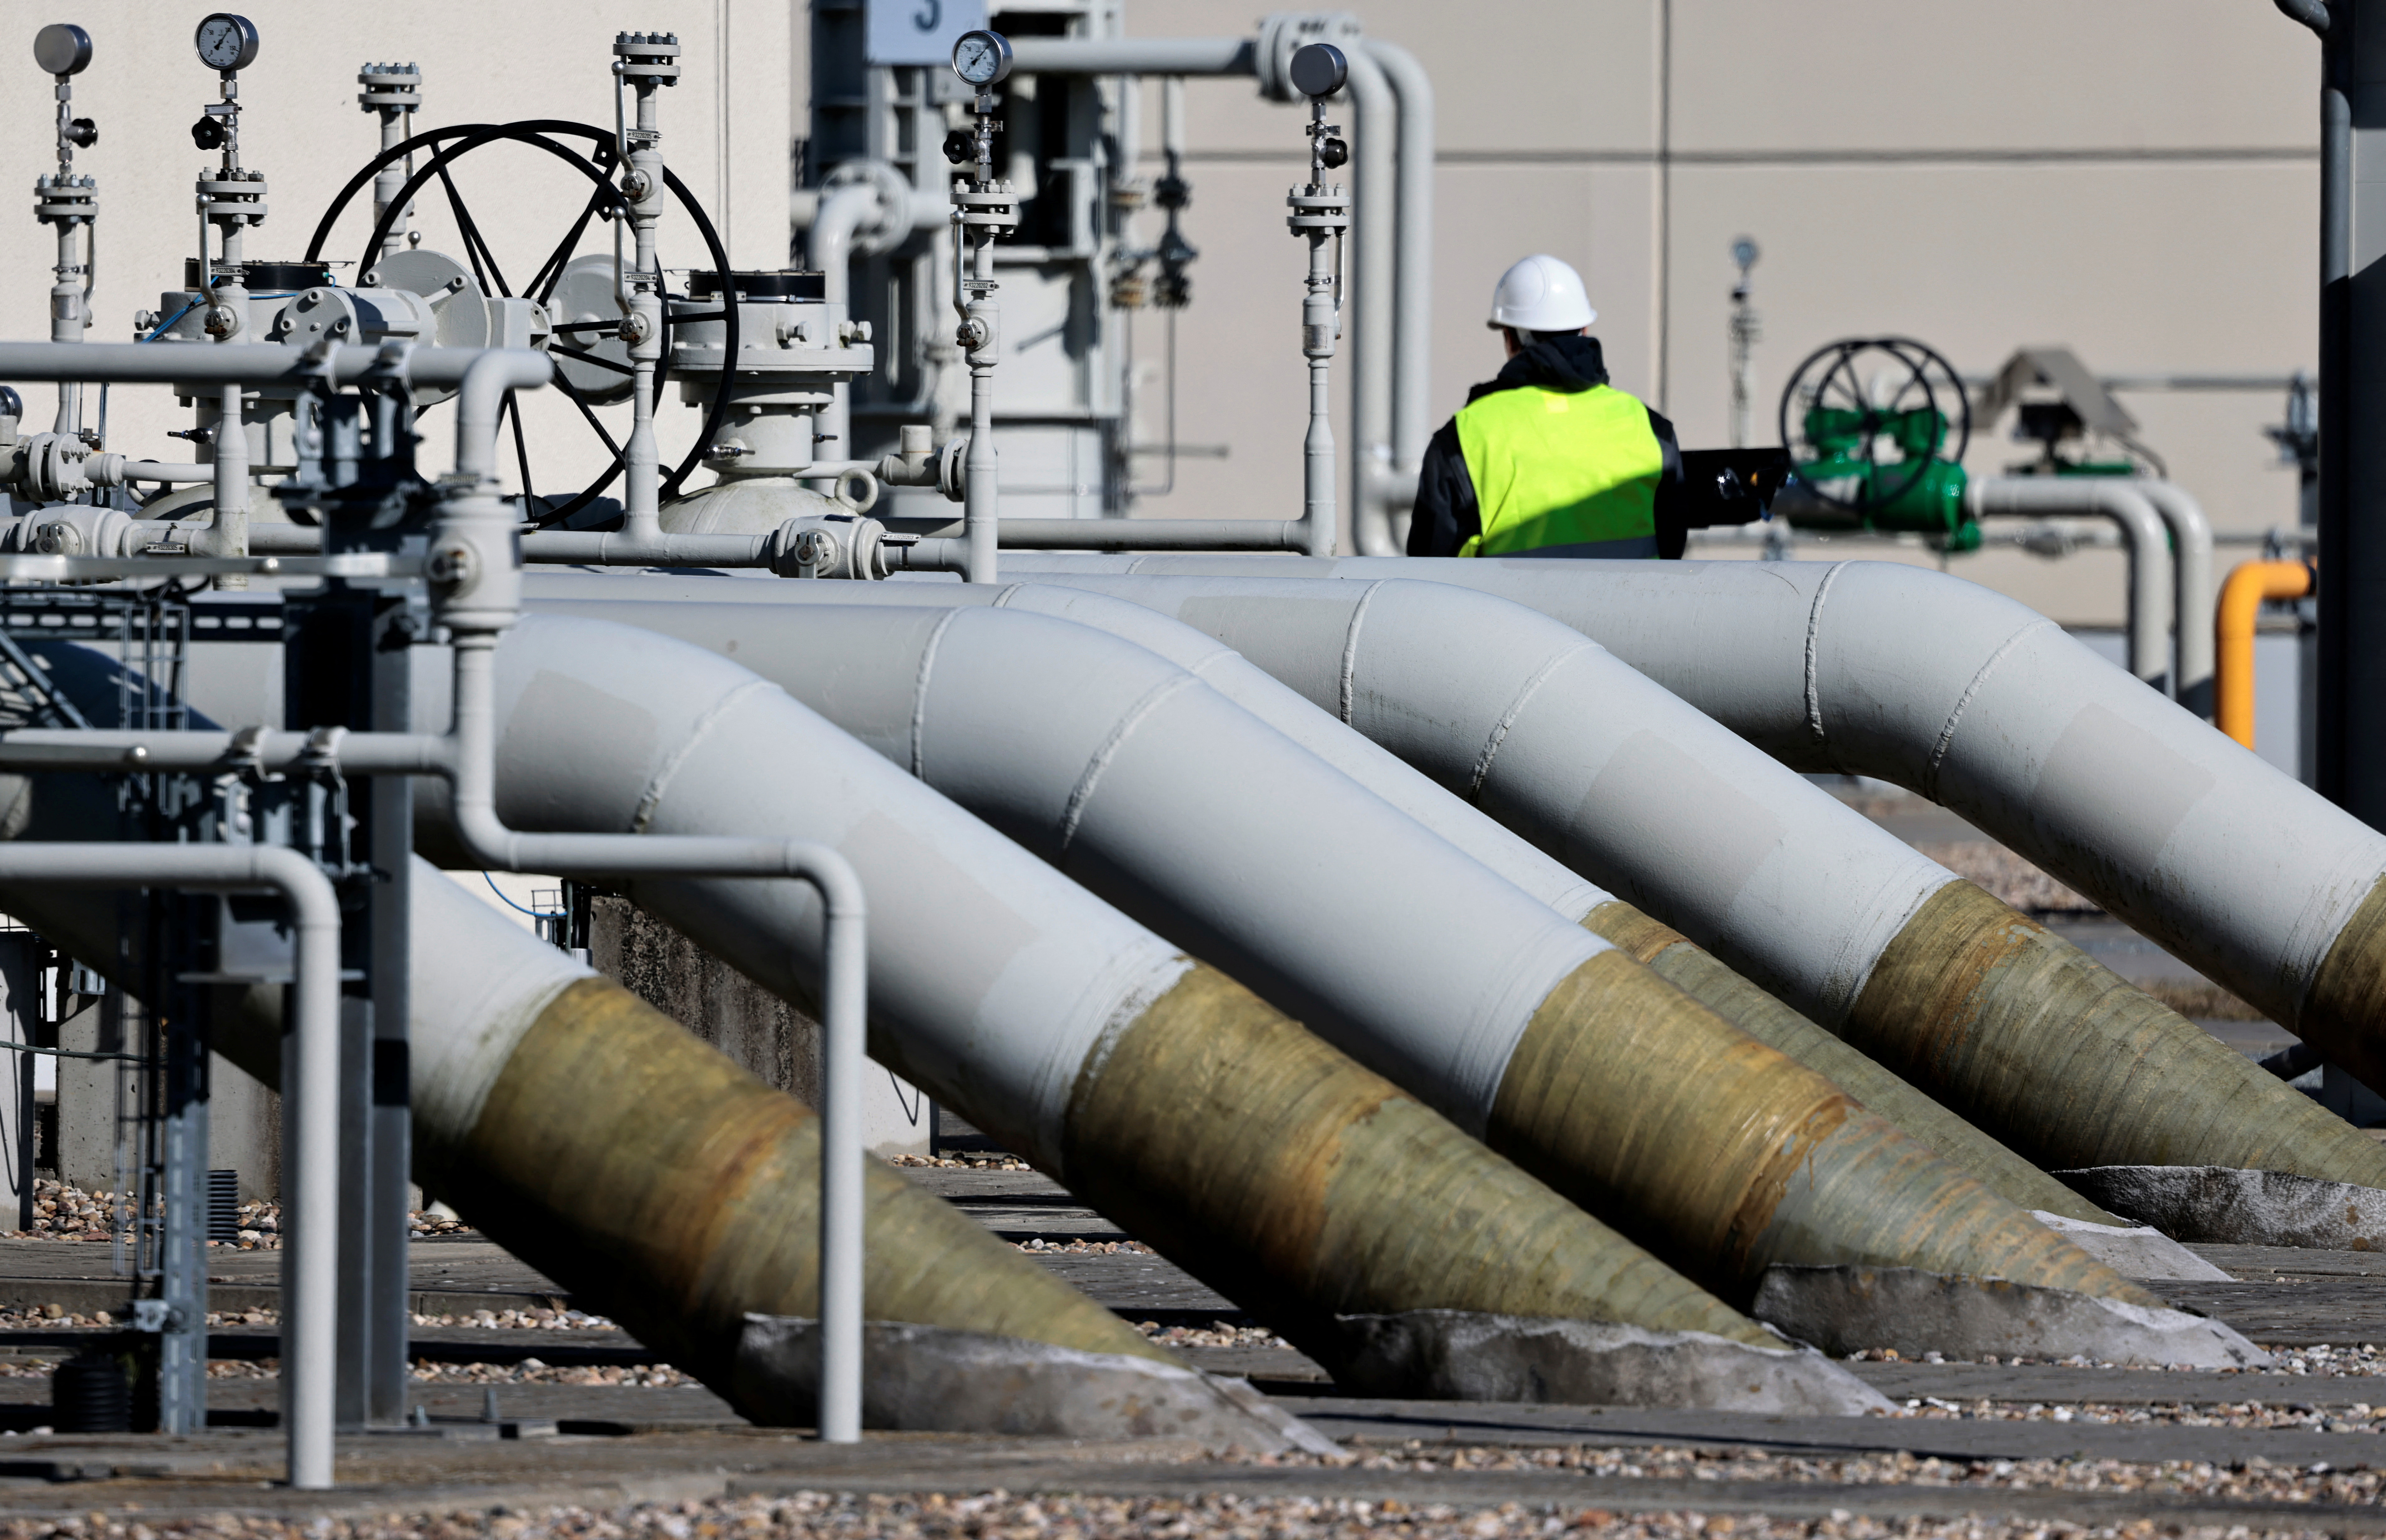 FOTO DE ARCHIVO: Las tuberías en las instalaciones de recalada del gasoducto 'Nord Stream 1' se muestran en Lubmin, Alemania, el 8 de marzo de 2022. REUTERS/Hannibal Hanschke